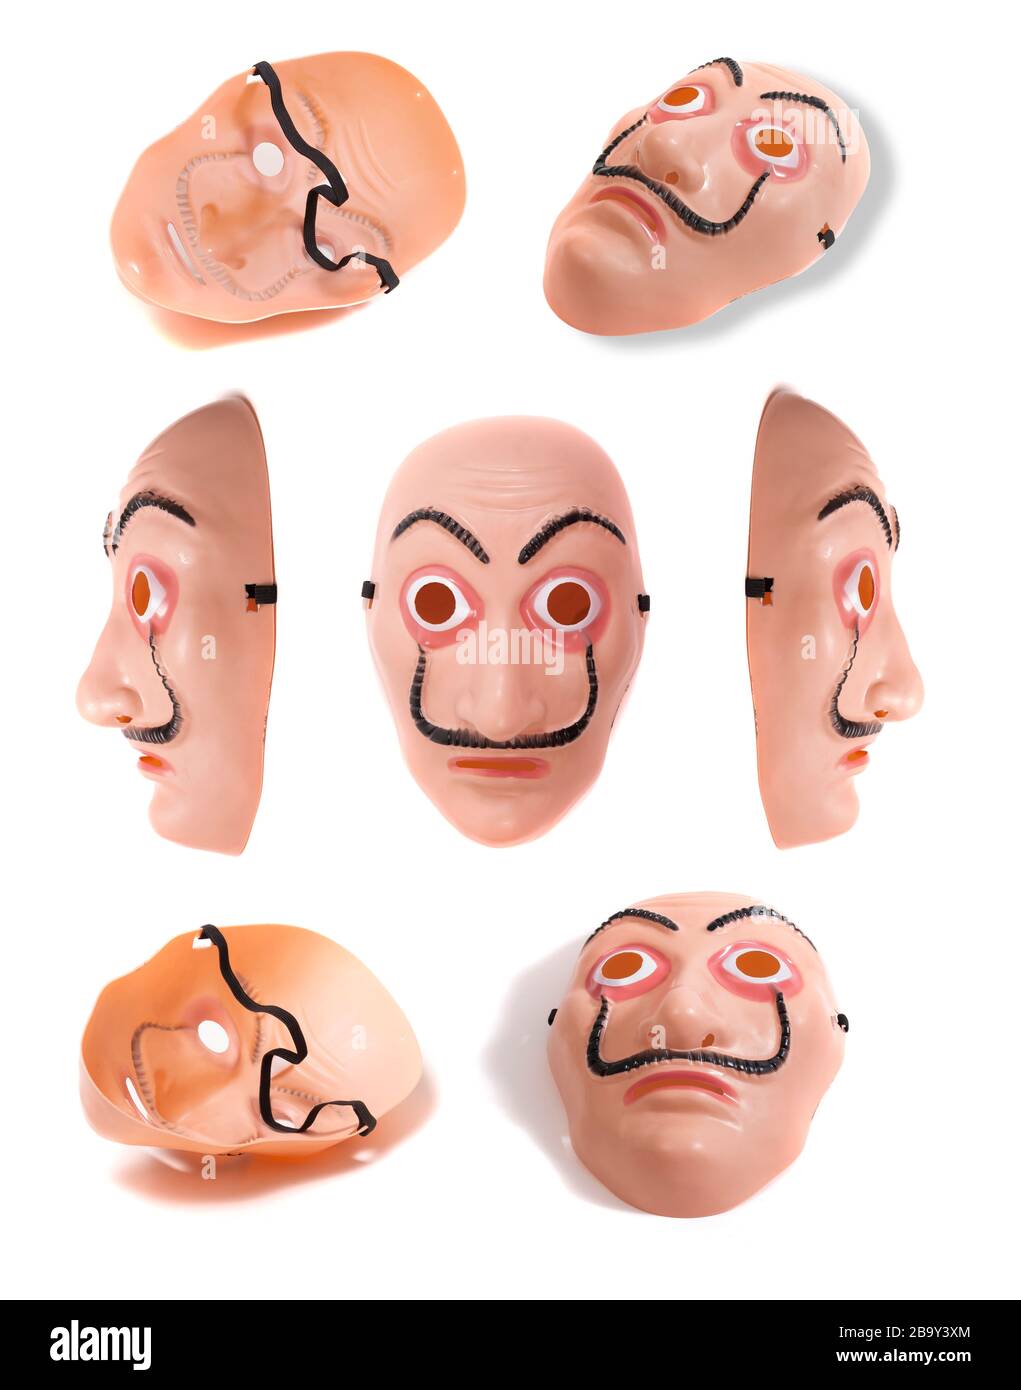 masque facial de costume en plastique dans plusieurs angles isolés sur un  fond blanc Photo Stock - Alamy